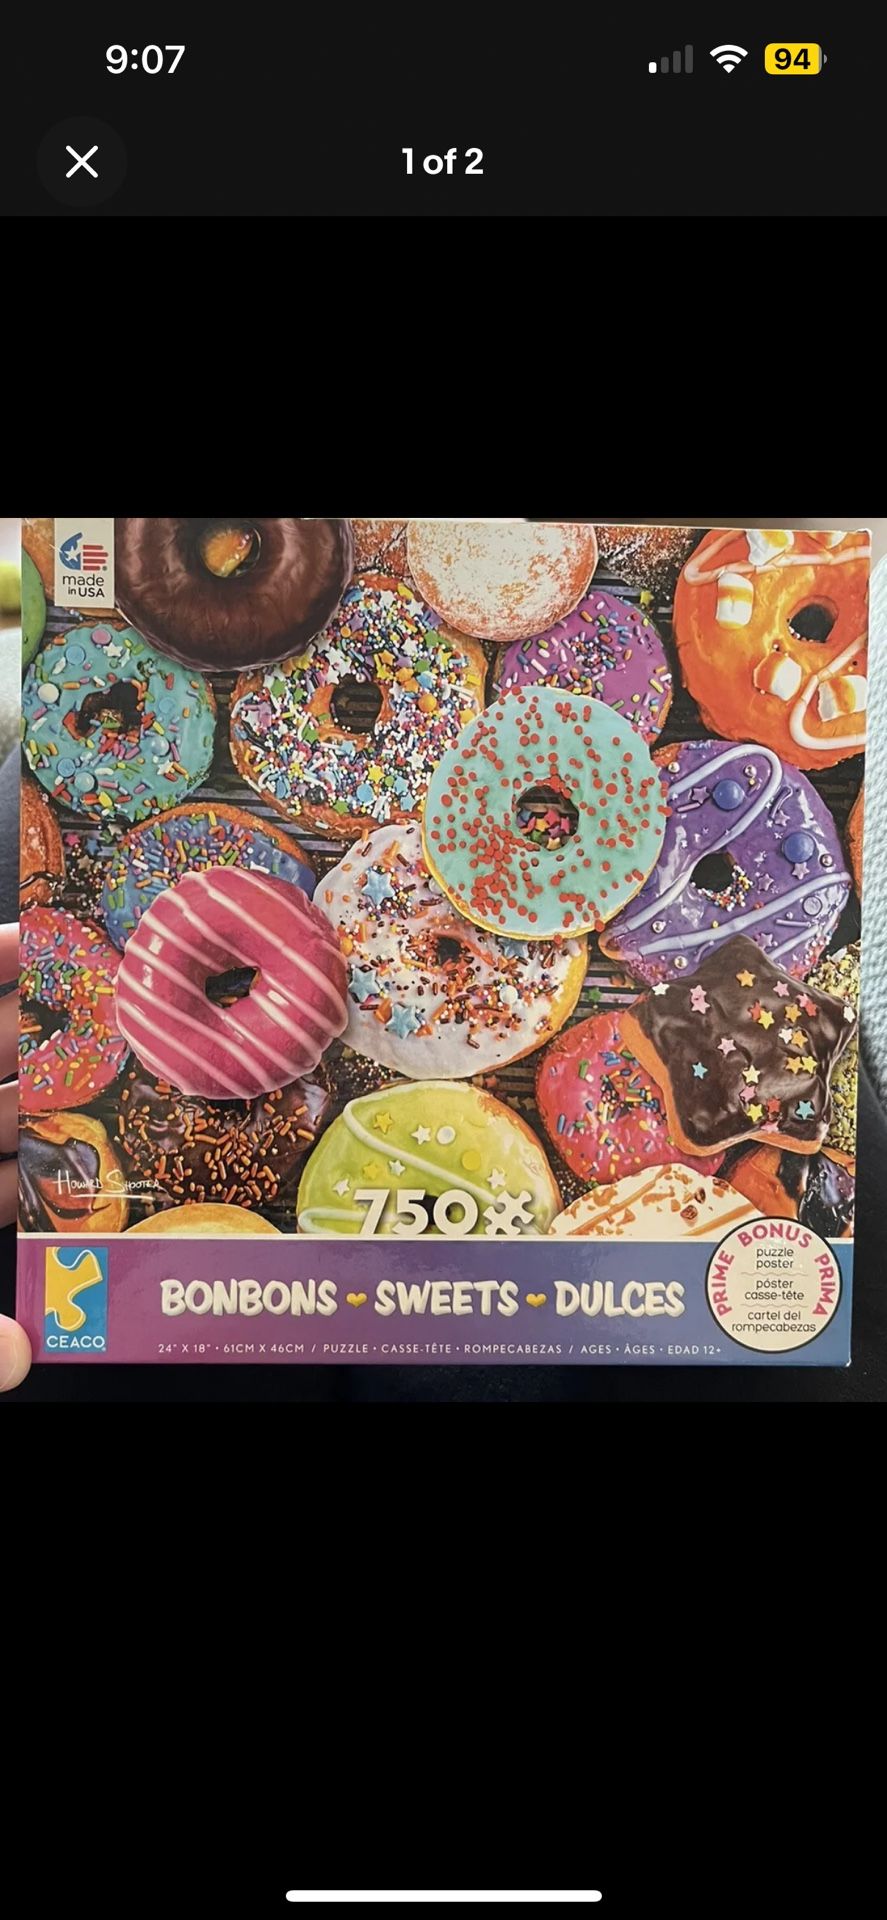 Bonbons Sweets Dulces: Ceaco 750 Pieces